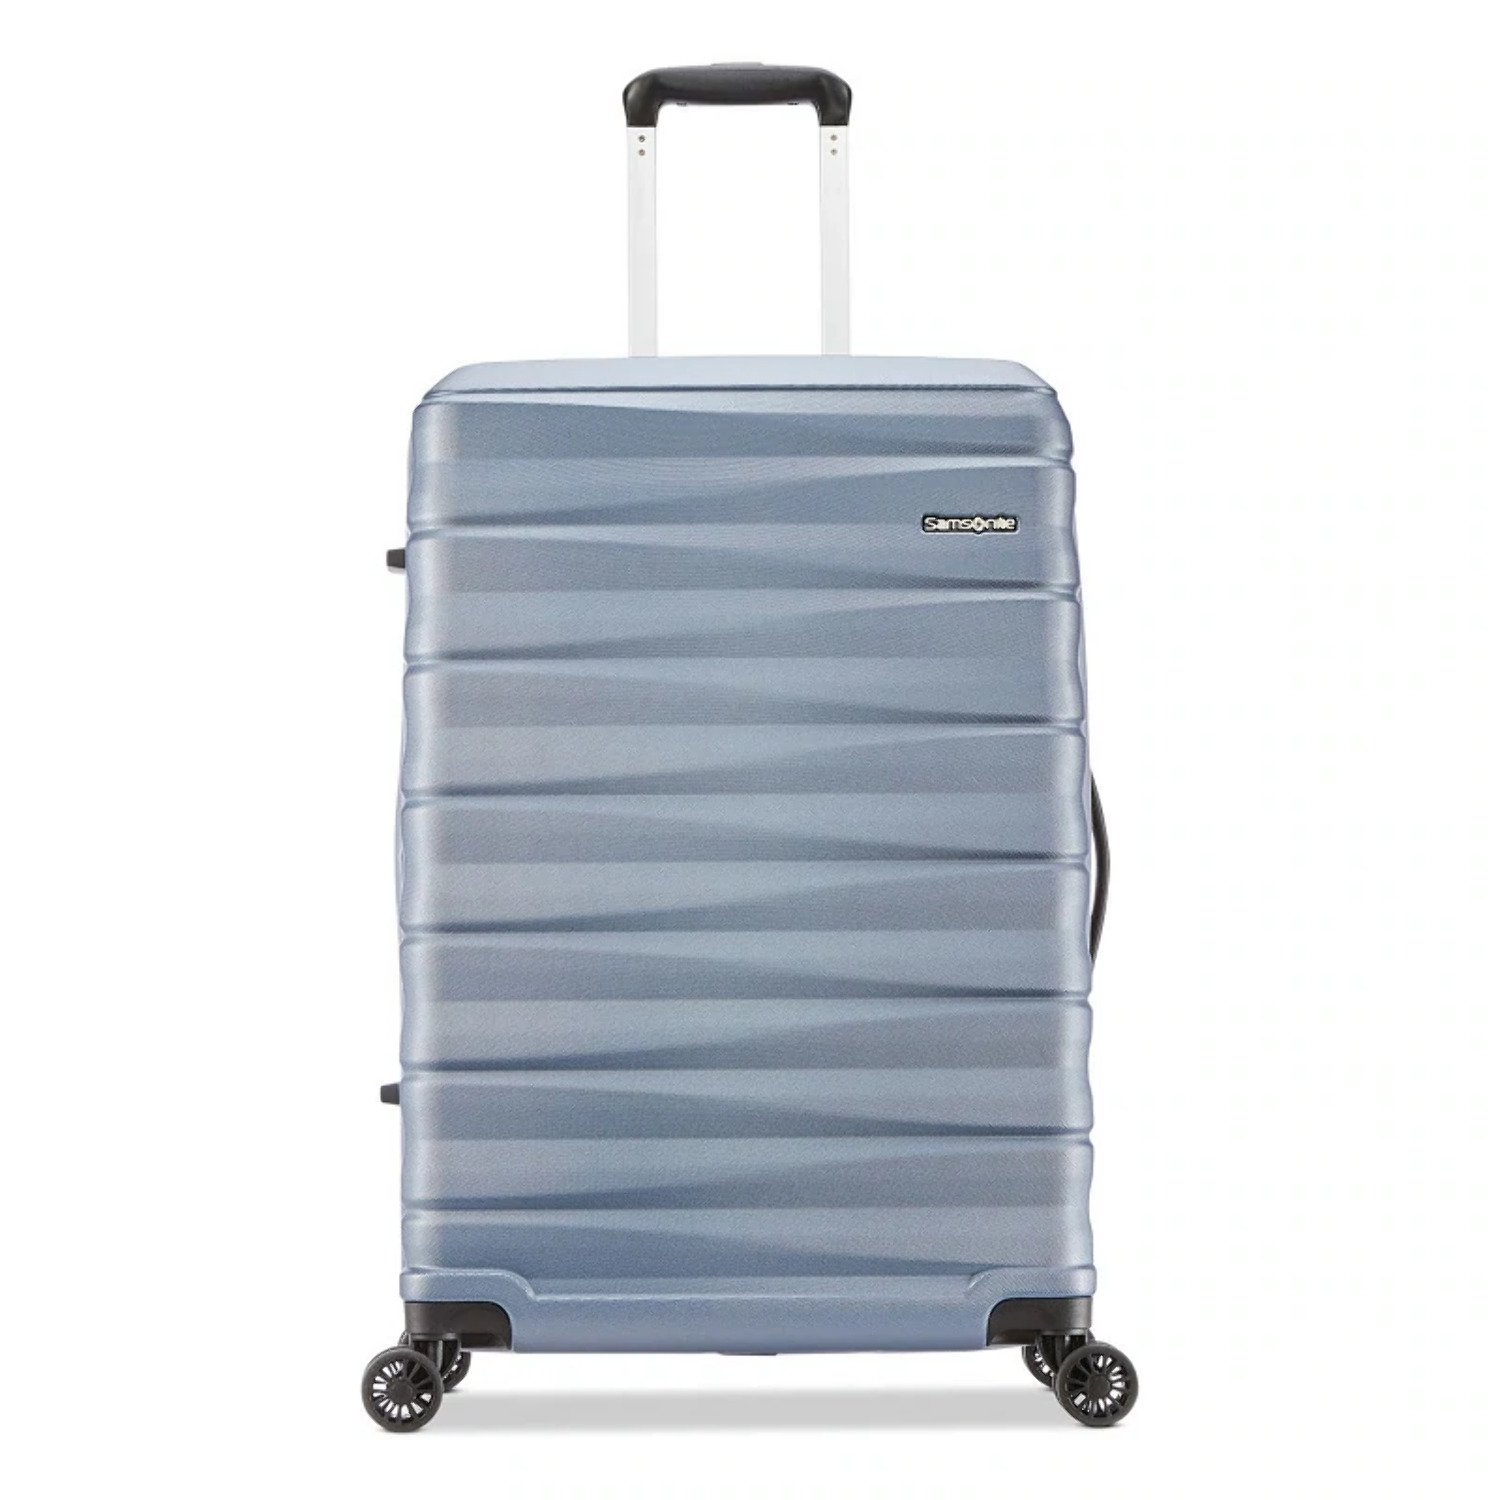 Samsonite Kingsbury Hardside Suitcase 2-Piece Luggage Set - Slate Blue - New - image 2 of 11